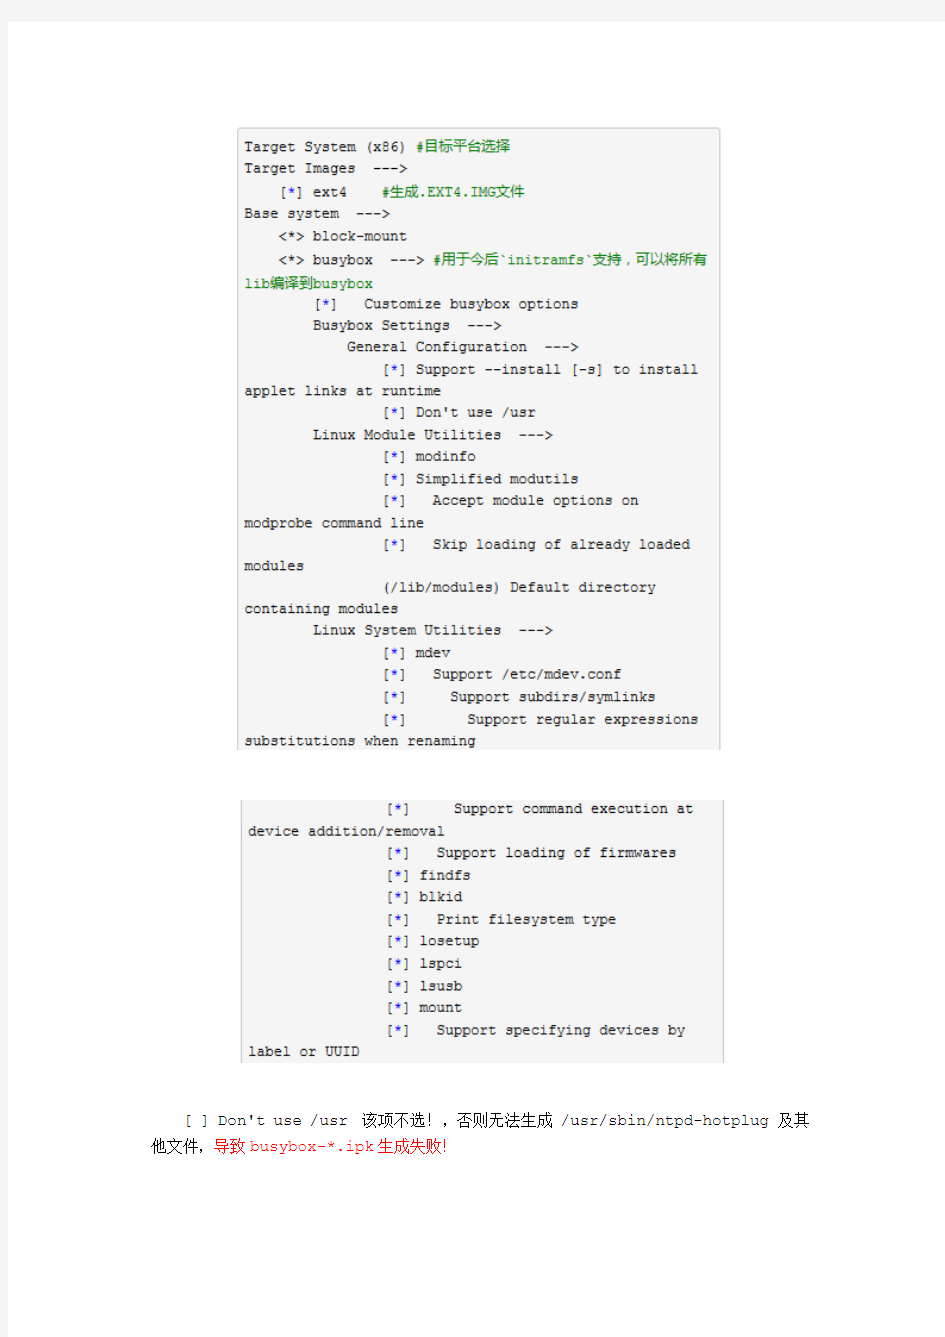 (完整word版)Openwrt学习笔记_x86 固件编译部署_2015.8.19修订